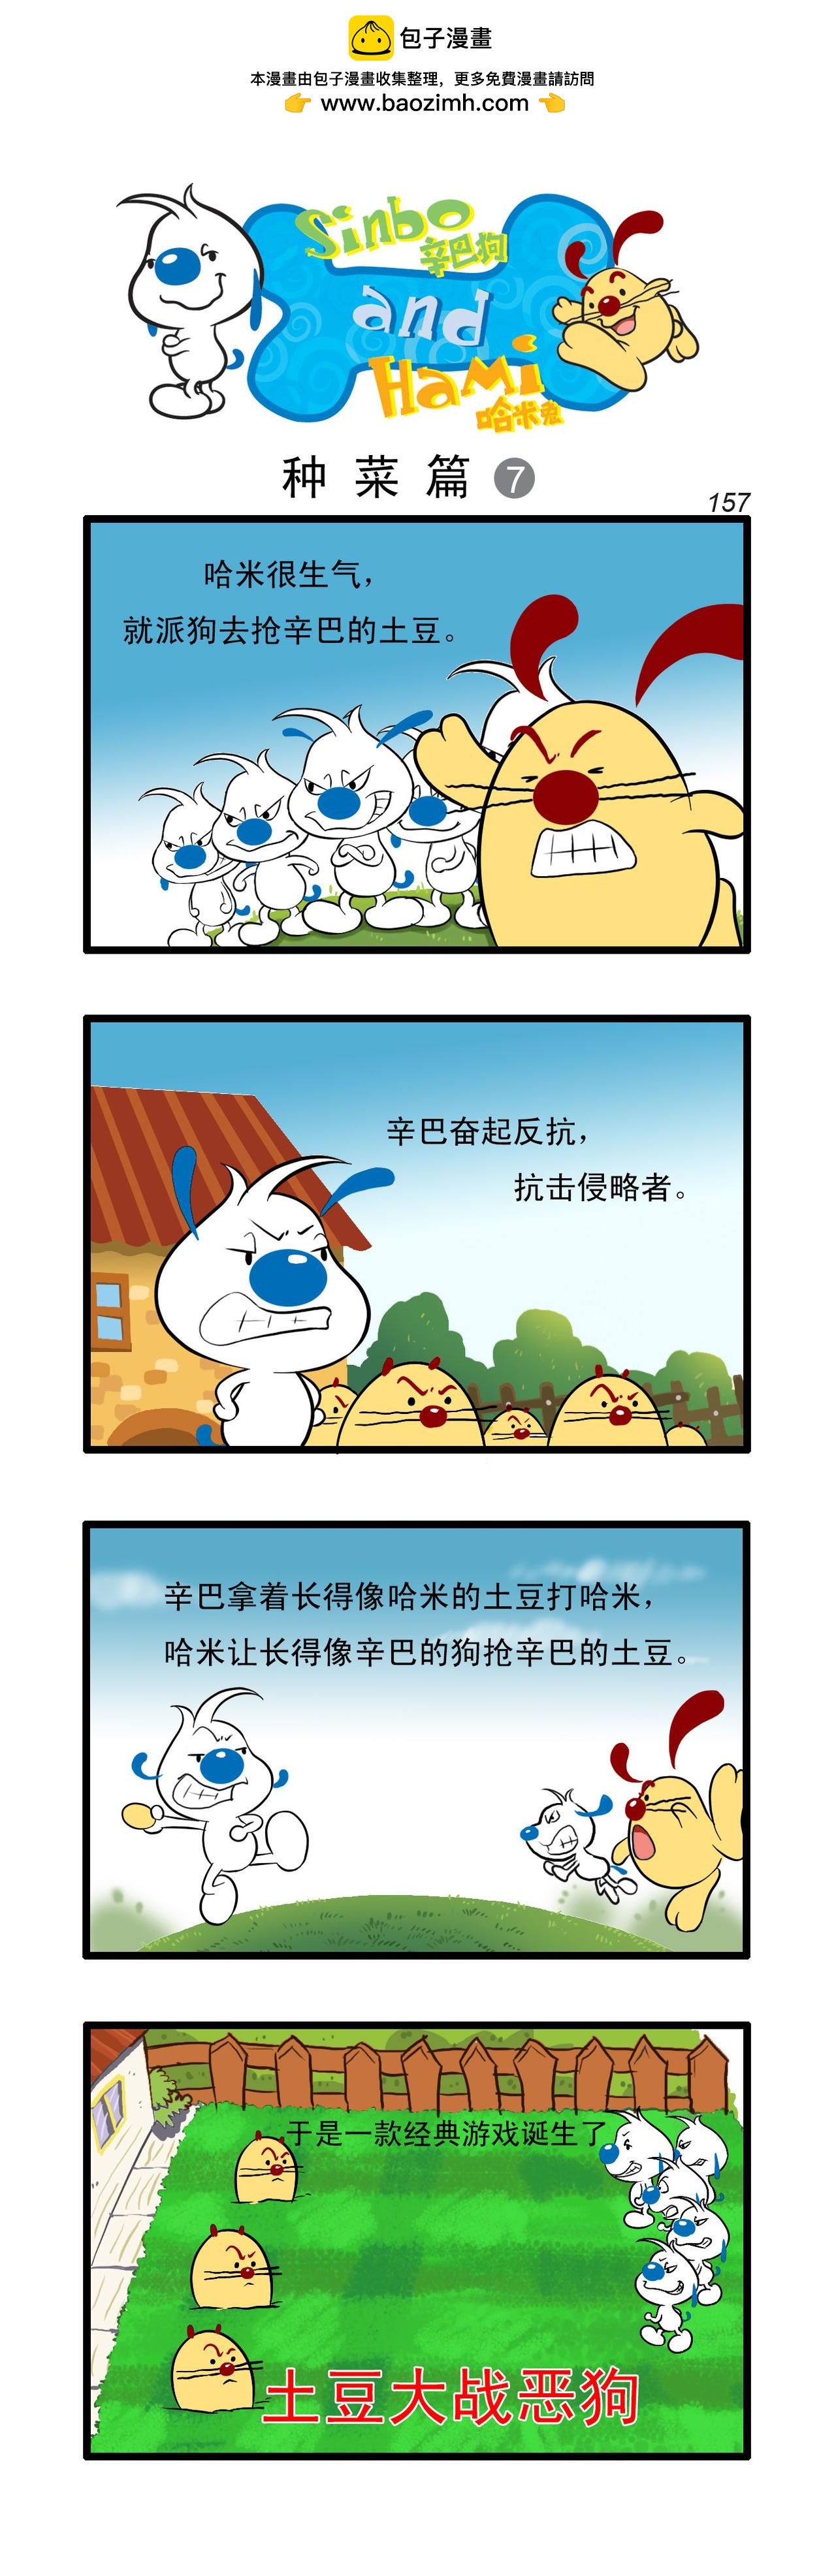 辛巴狗日常漫畫 - 多格46 - 1